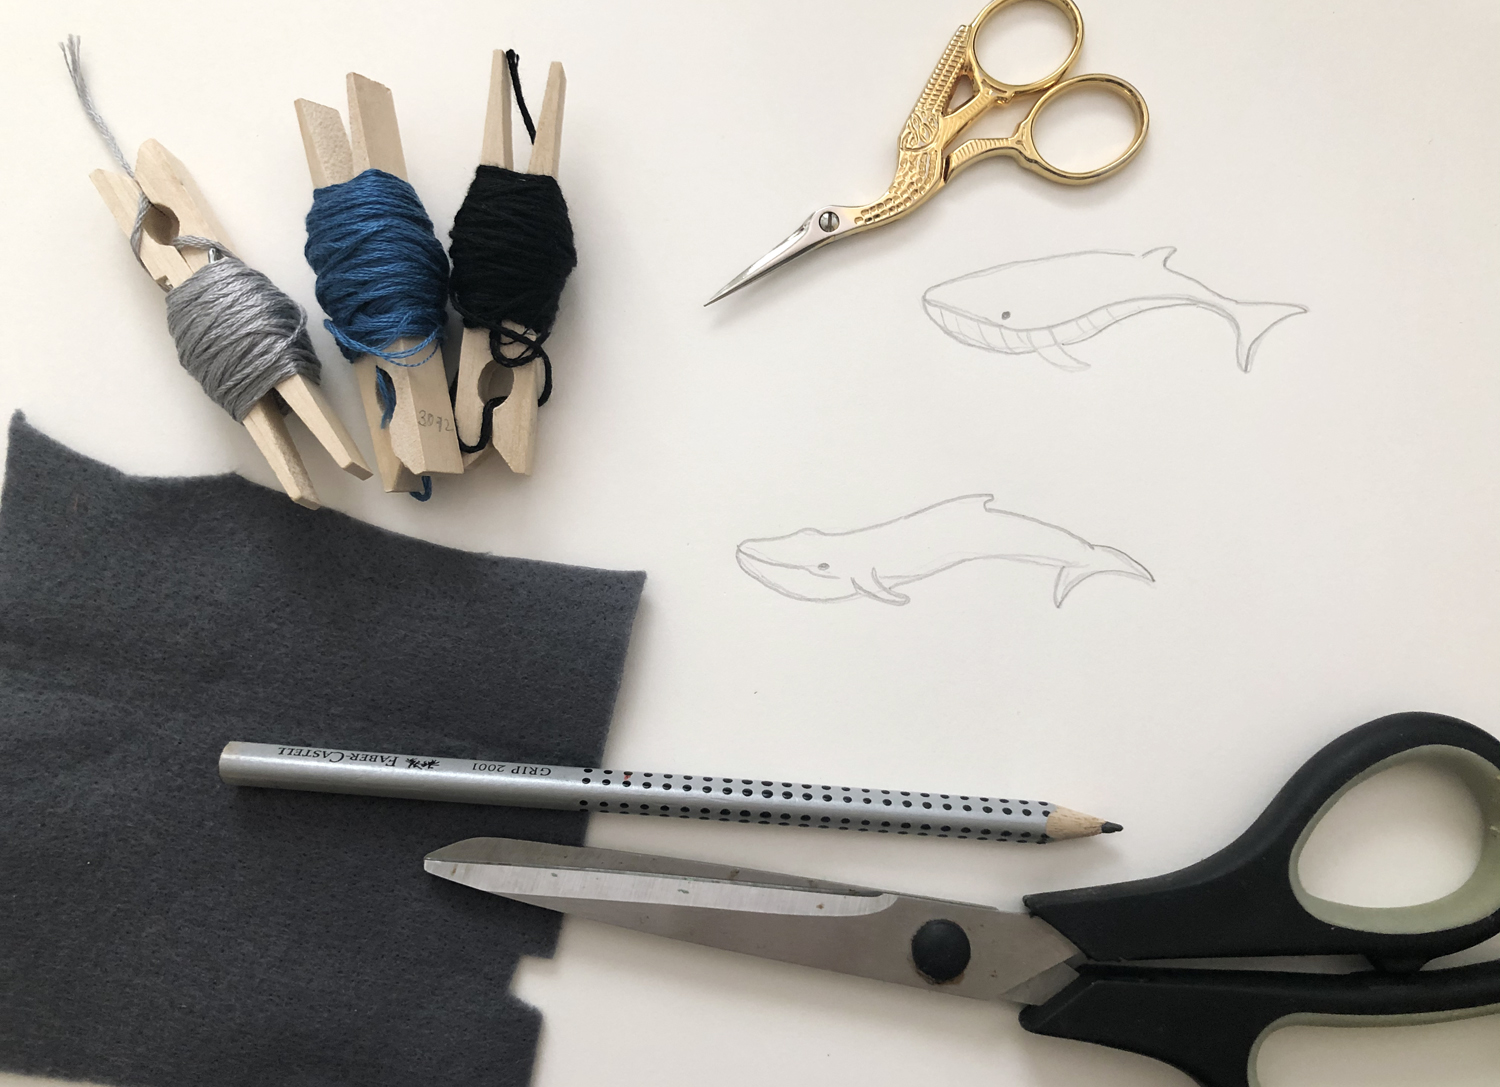 Blauwal sticken - Materialien